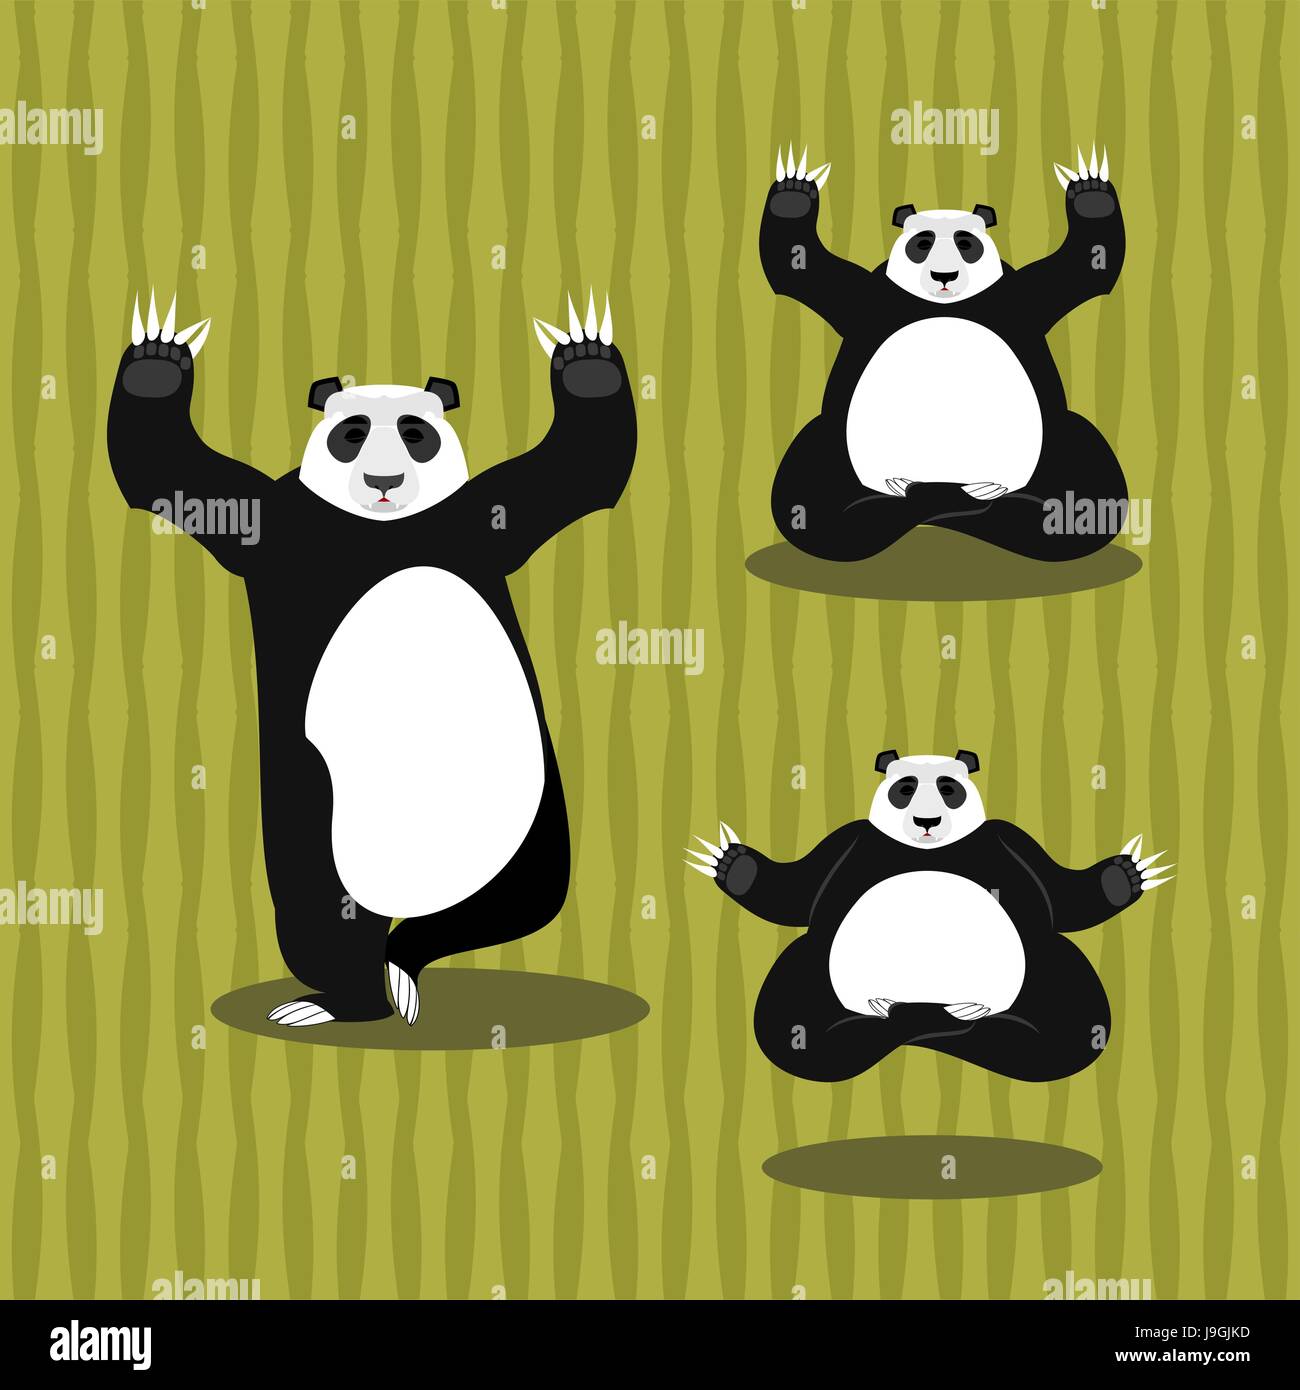 Panda Yoga meditating. Chinese bear on background of bamboo